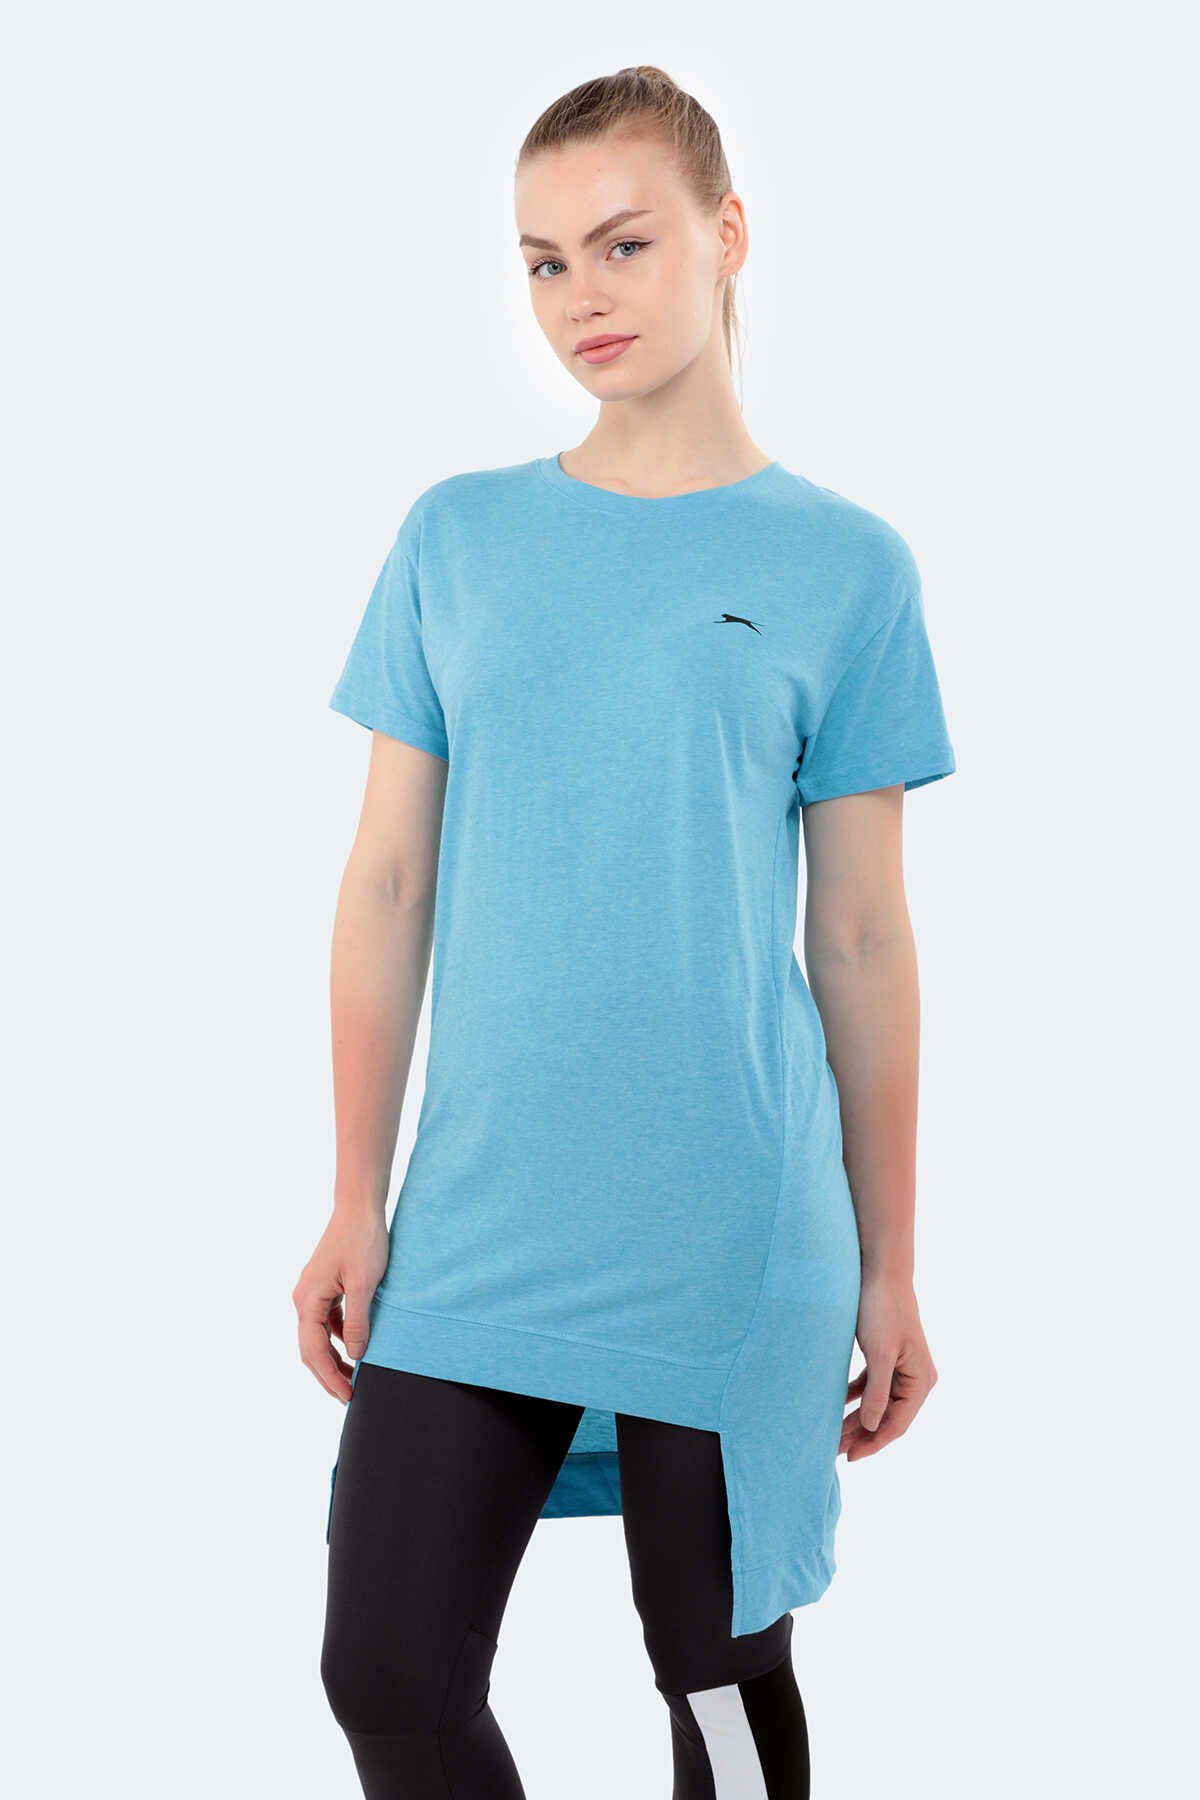 Slazenger - Slazenger MINATO Kadın Kısa Kol T-Shirt Mavi